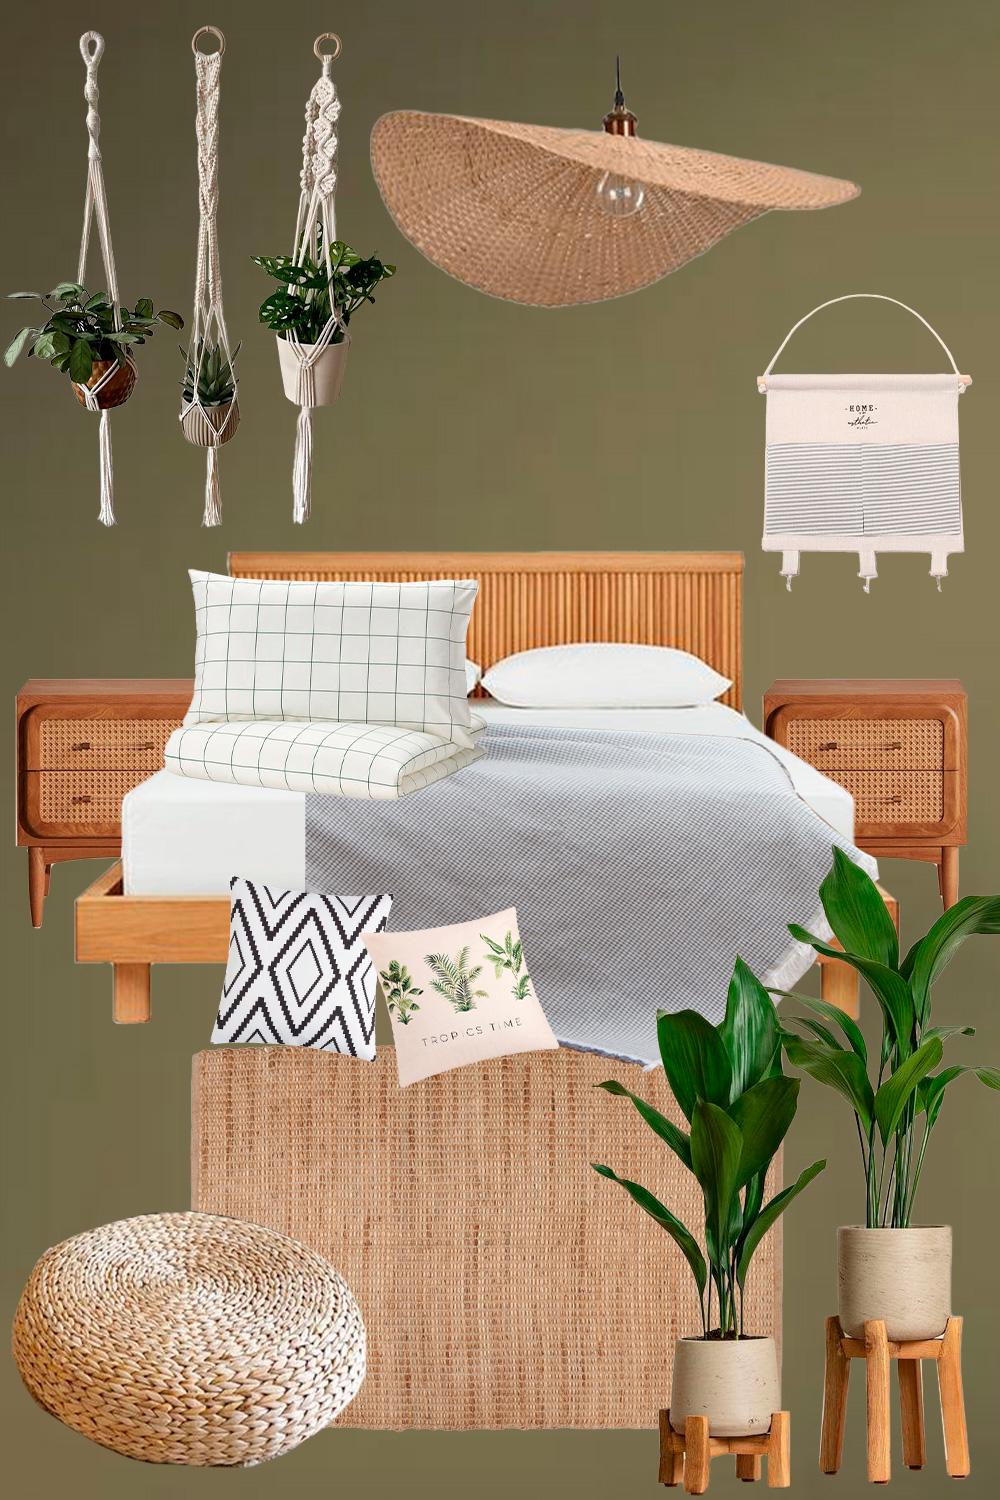 Постельное бальё, подушки, домашние растения